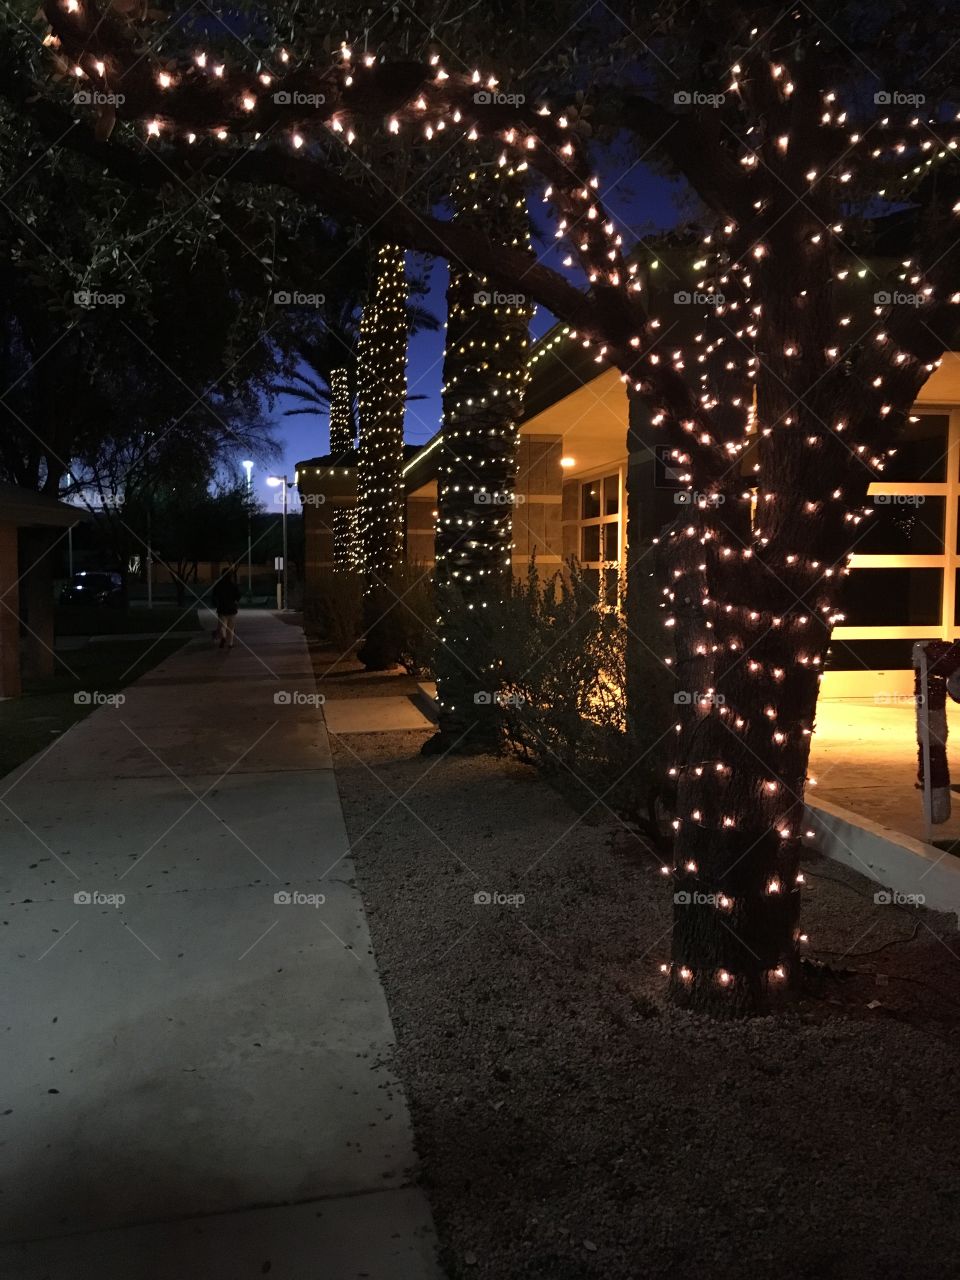 Mini lights on tree